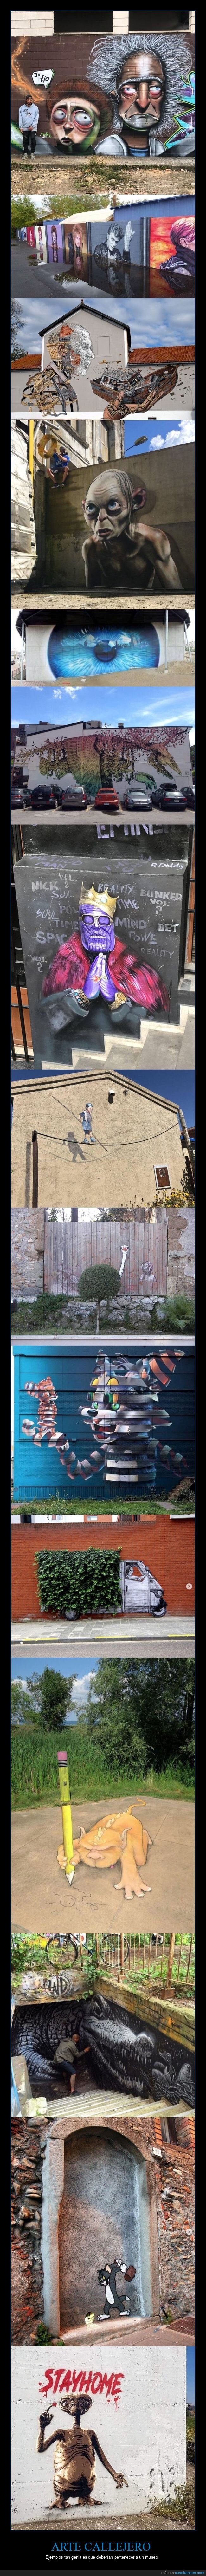 arte callejero,graffitis,arte